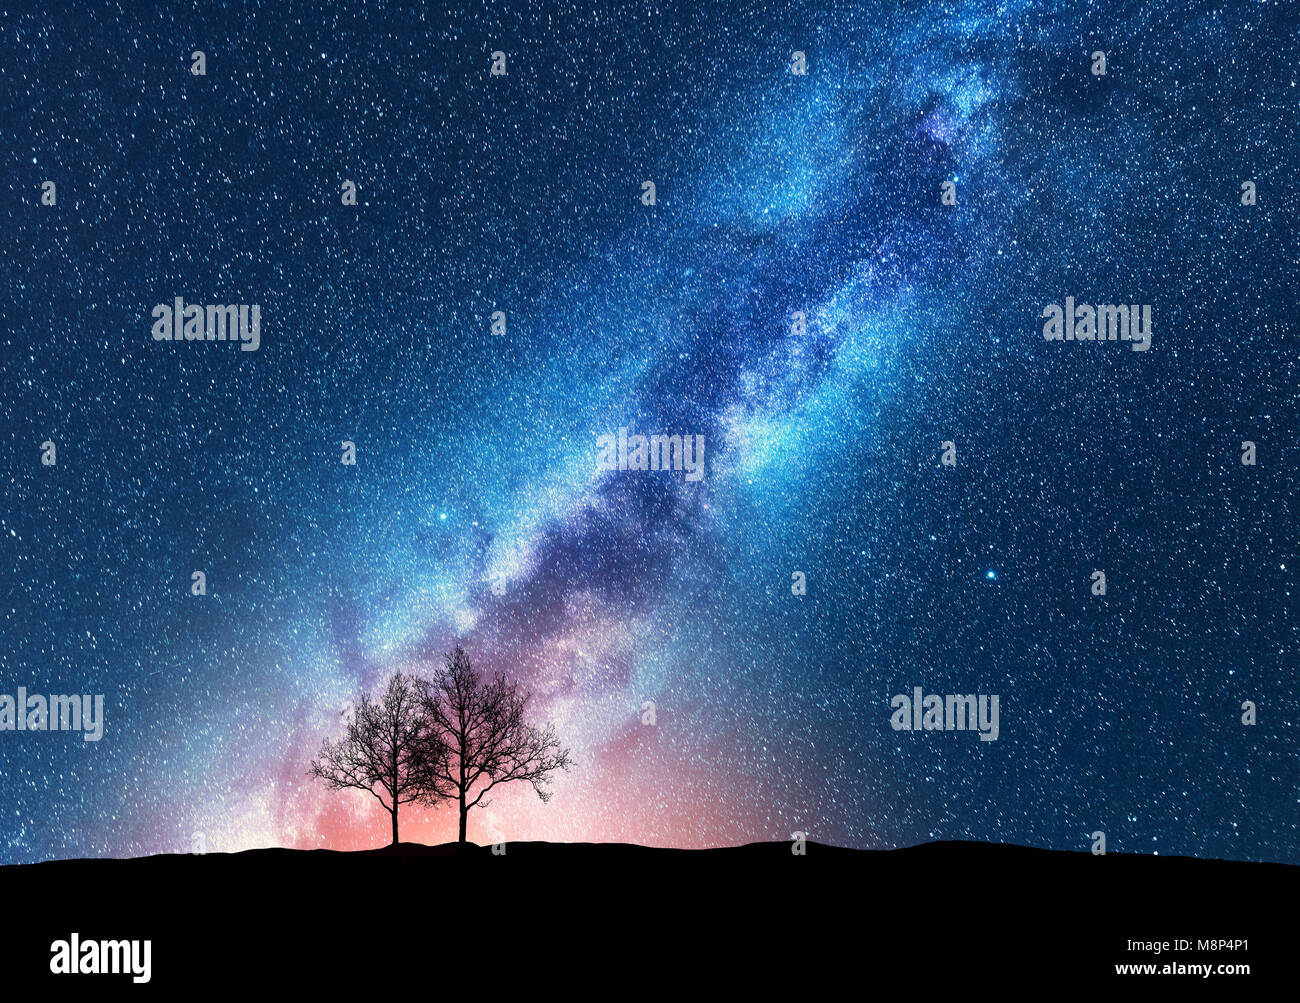 Alberi contro il cielo stellato con Via Lattea. Sfondo spazio. Paesaggio notturno con alberi da sola sulla collina e colorato brillante Via Lattea. Incredibile Galaxy. Foto Stock